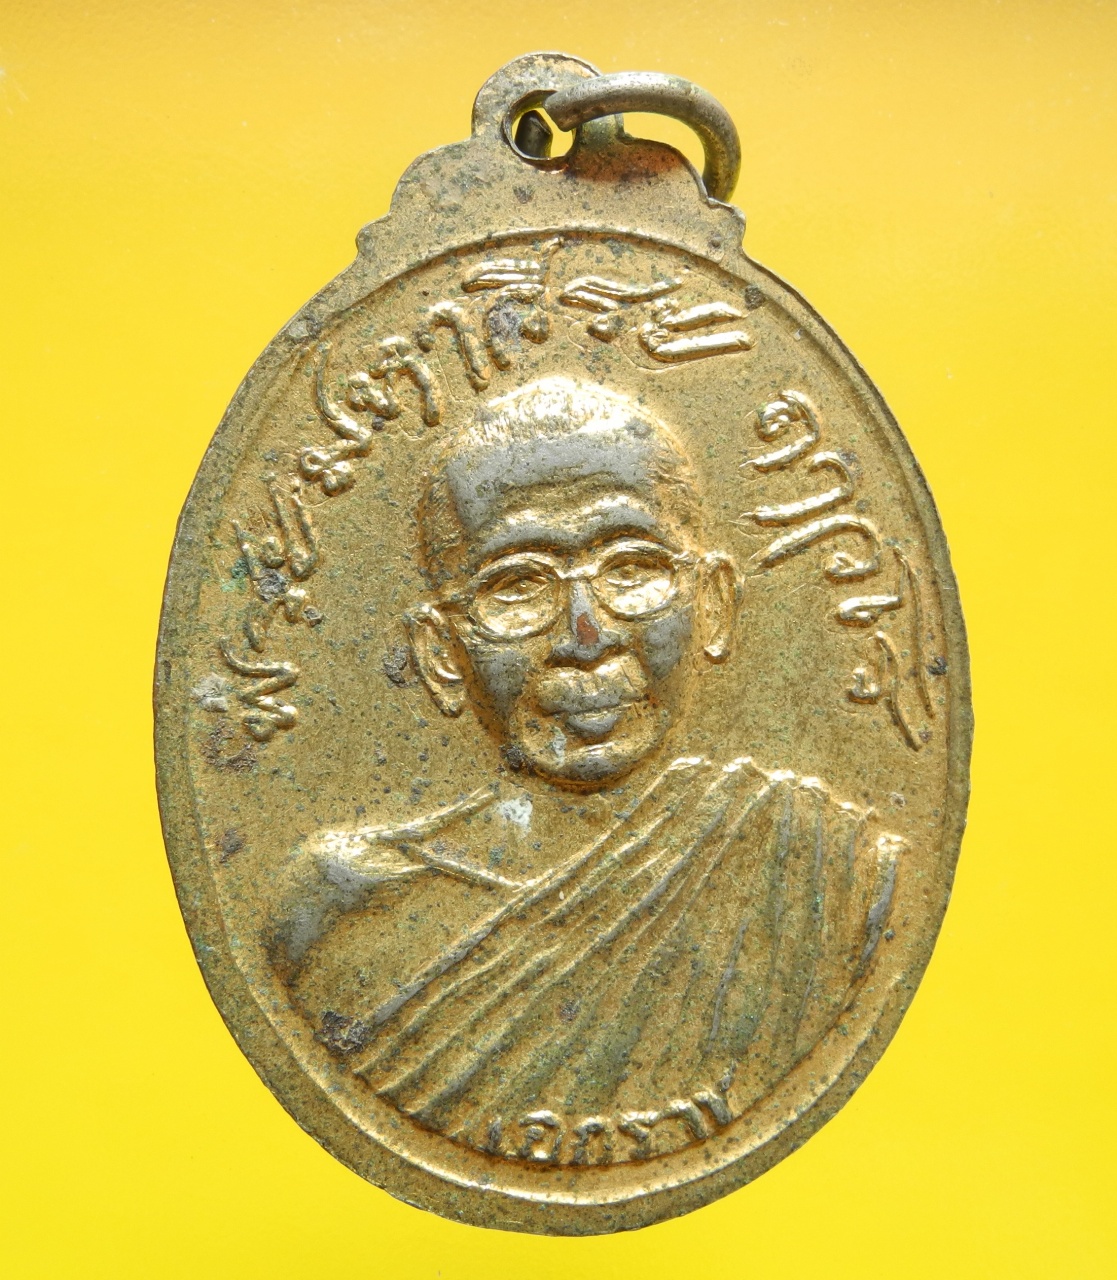 ภาพที่ 2 เหรียญหลวงพ่อปาน หลังพระมหาวีระ กะไหล่ทอง